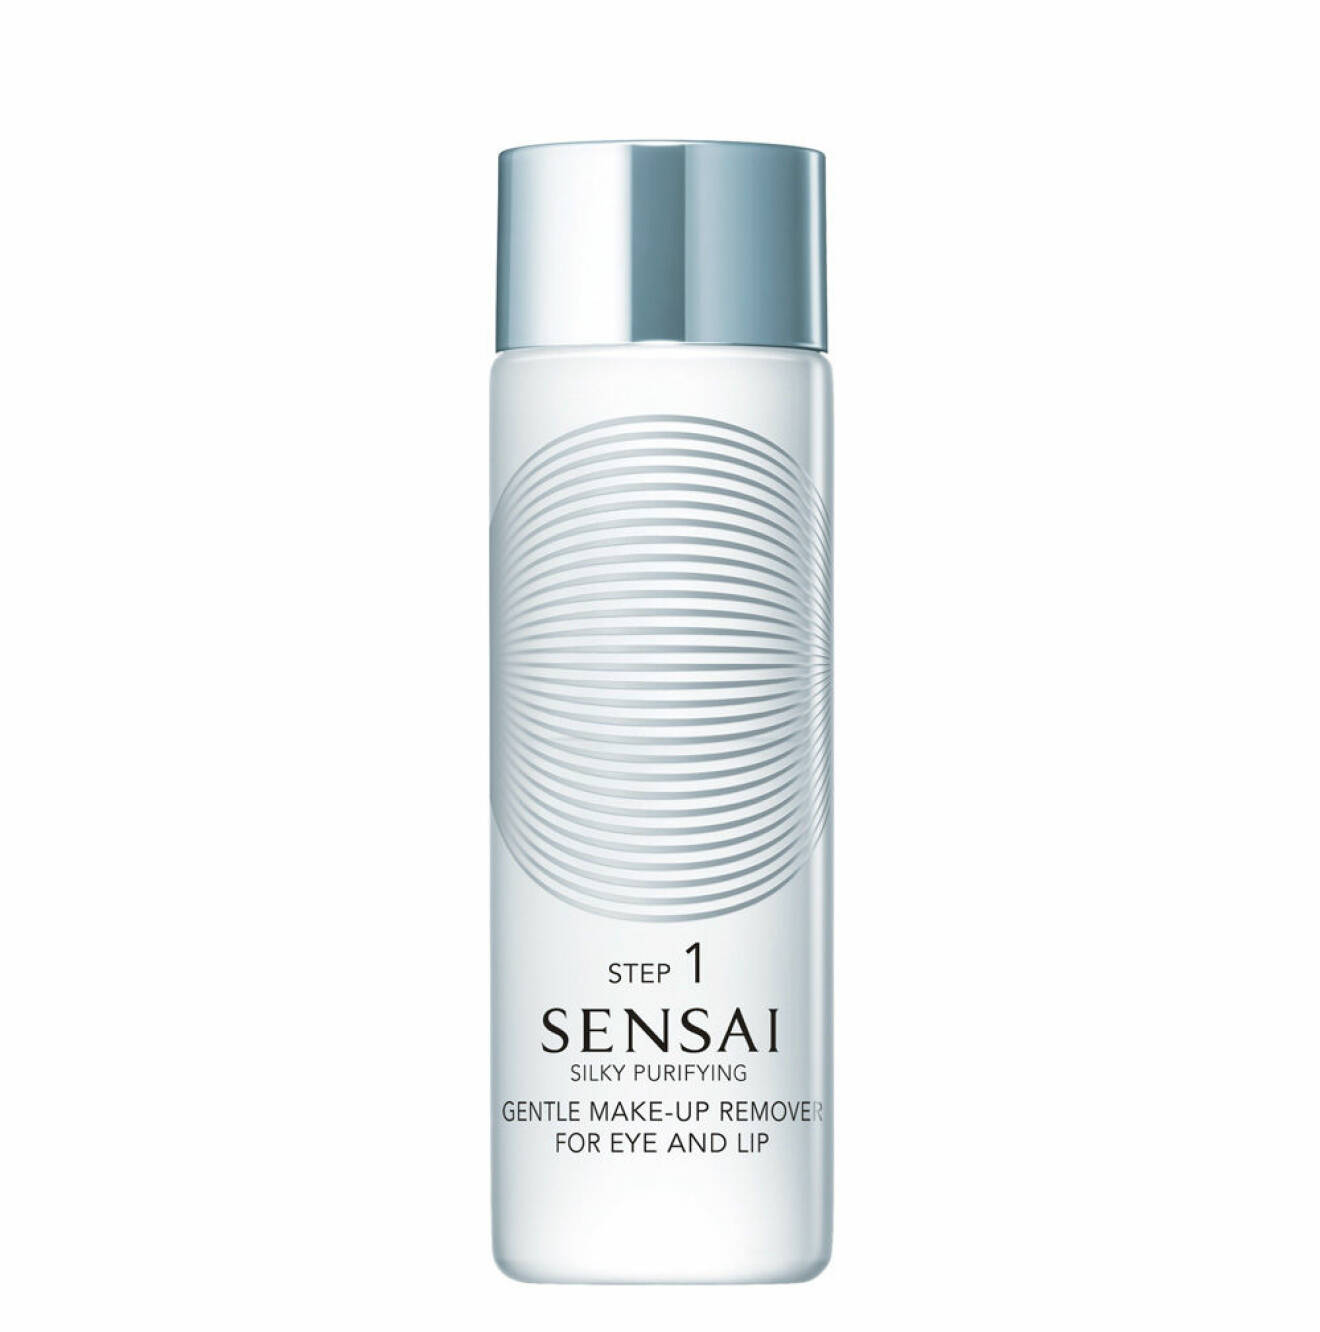 Sensai Gentle Make-Up Remover for Eye and Lip från Kanebo innehåller tre rengörande oljor som löser upp smink och gör att huden känns len, ren och fräsch. Ca 325 kr.